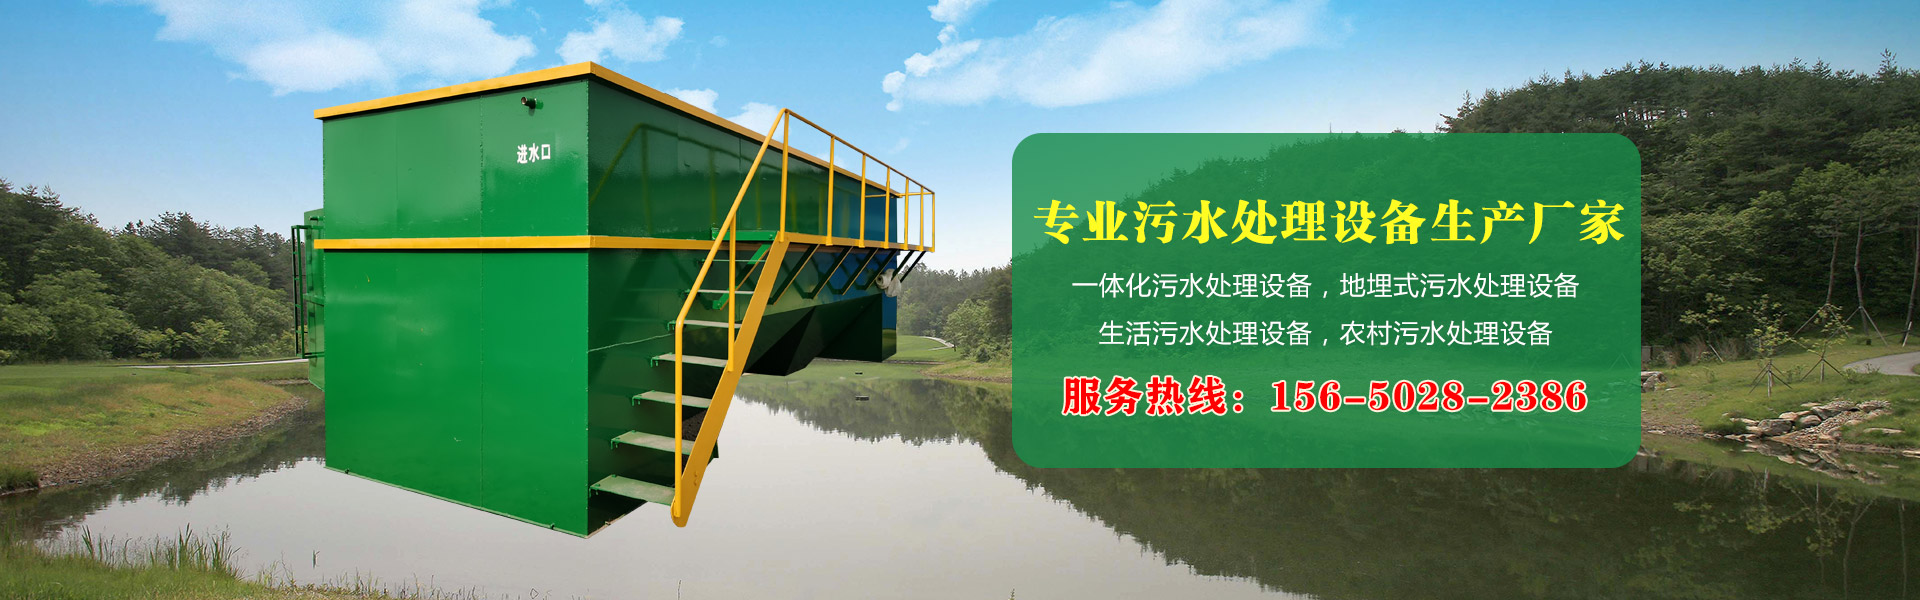 台湾污水处理设备